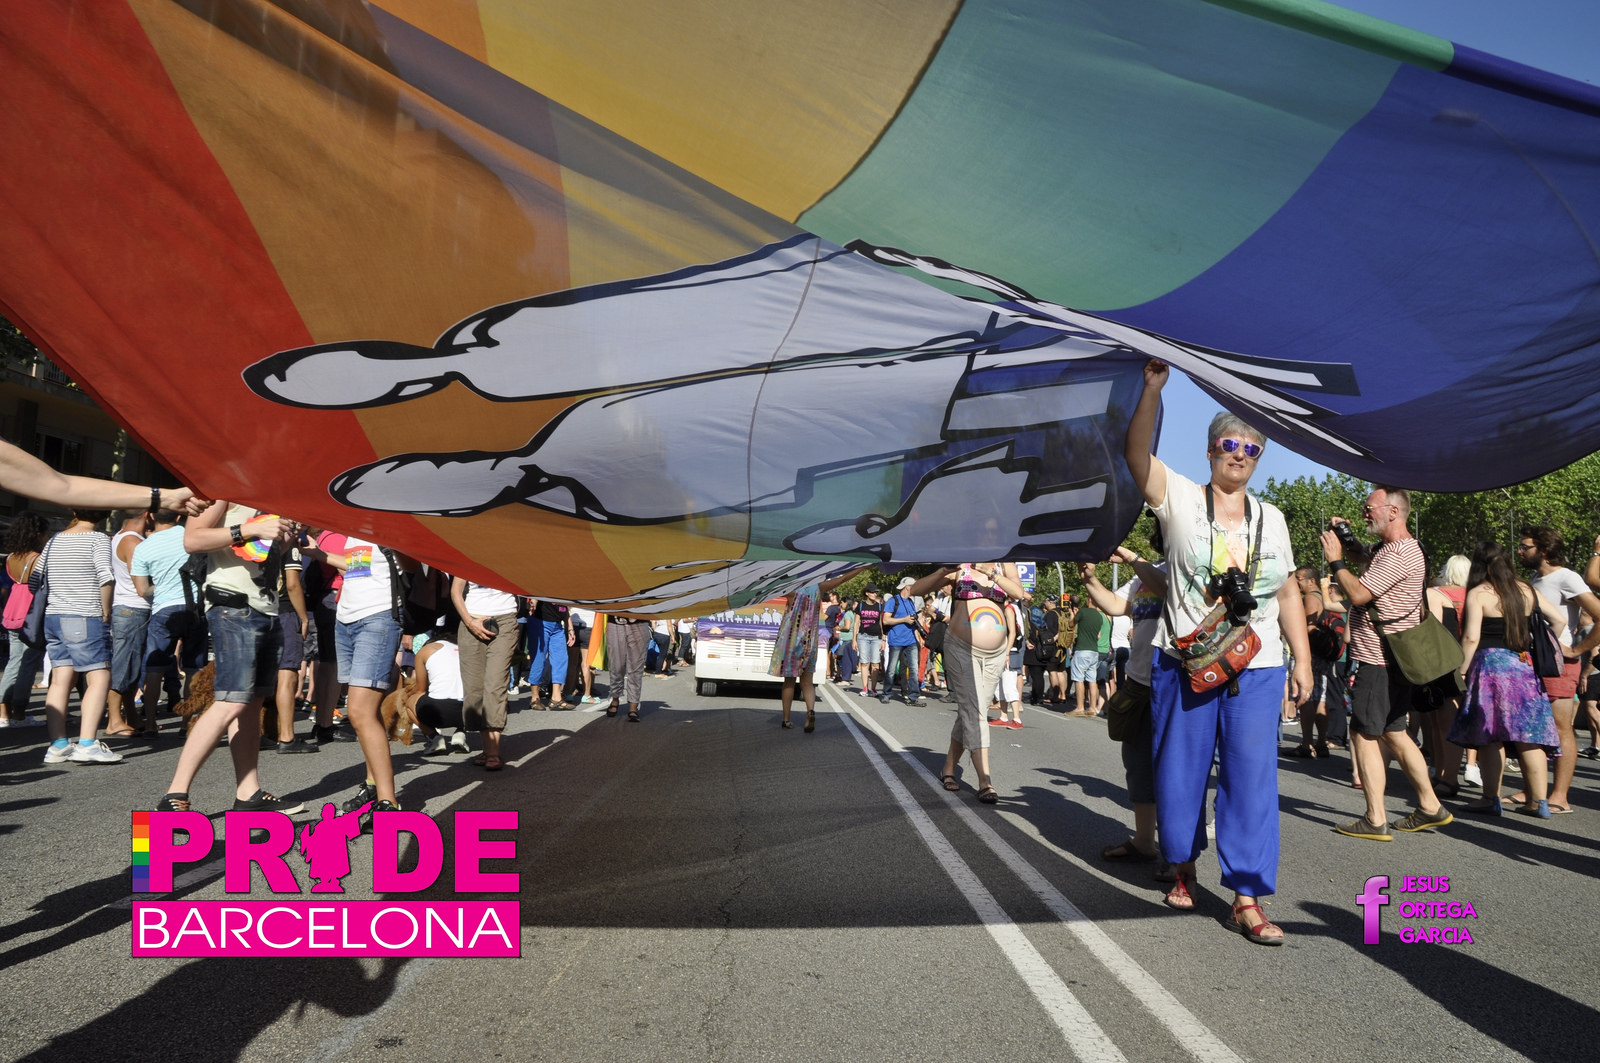 Tutto pronto per il Barcellona Pride: attese più di 200 mila persone - barcellona pride 2015 4 - Gay.it Archivio